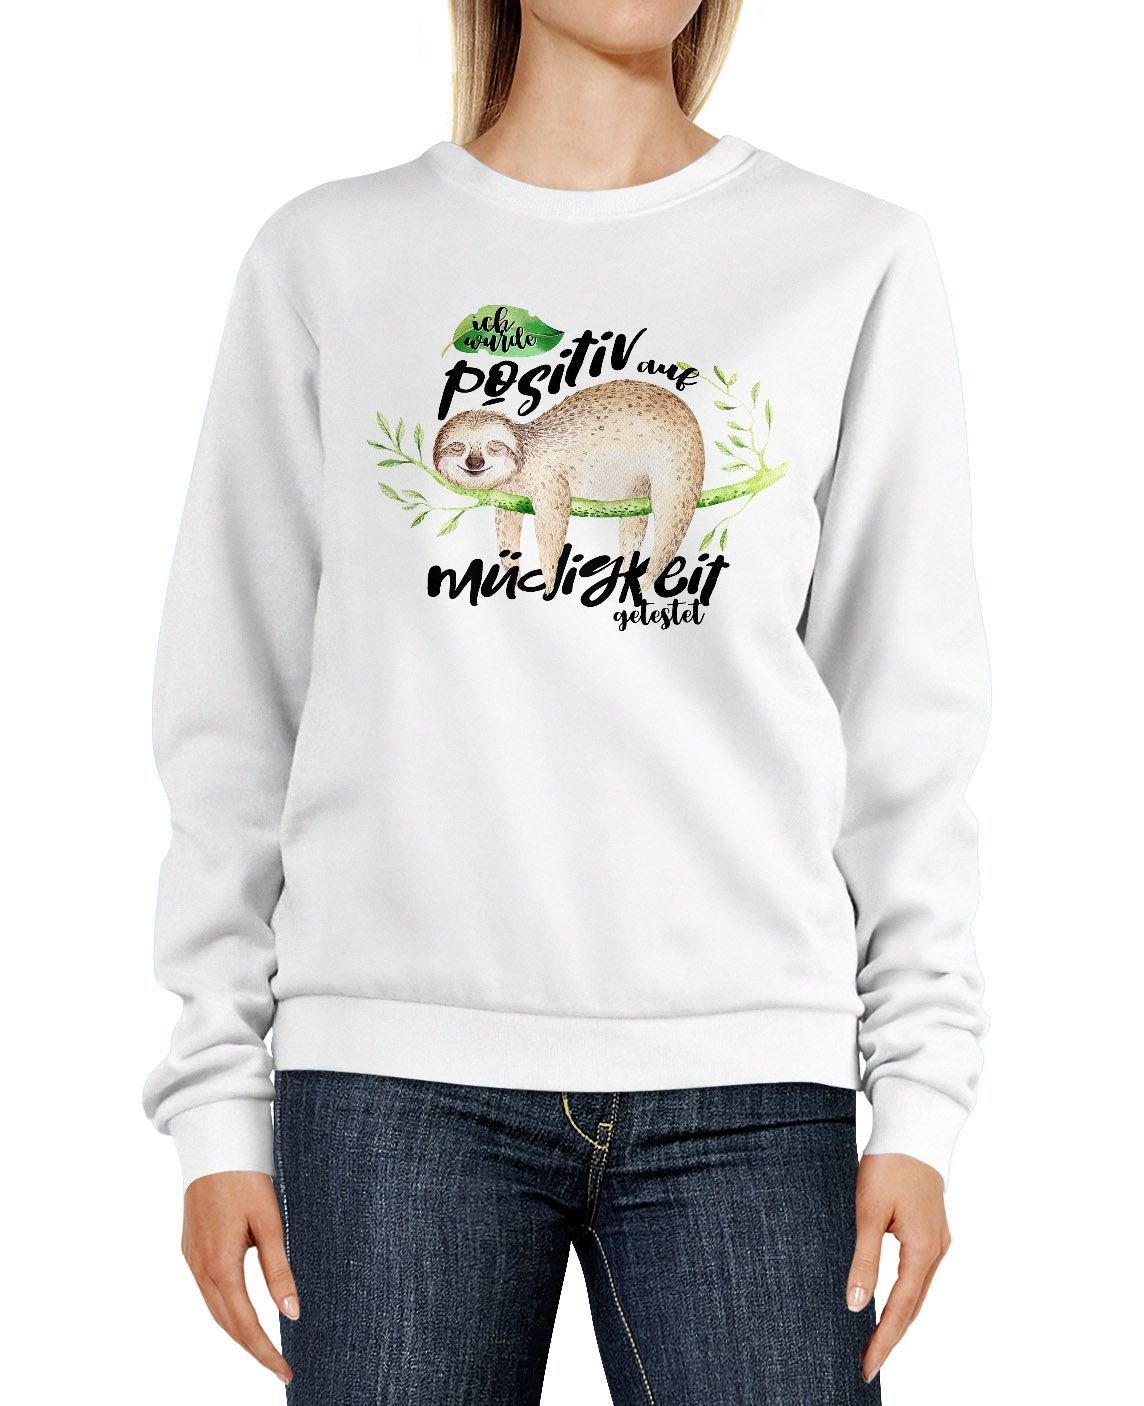 MoonWorks Sweatshirt Sweatshirt Damen Faultier Müdigkeit Moonworks® wurde positiv Rundhals-Pullover Pulli Sweater auf weiß getestet Ich